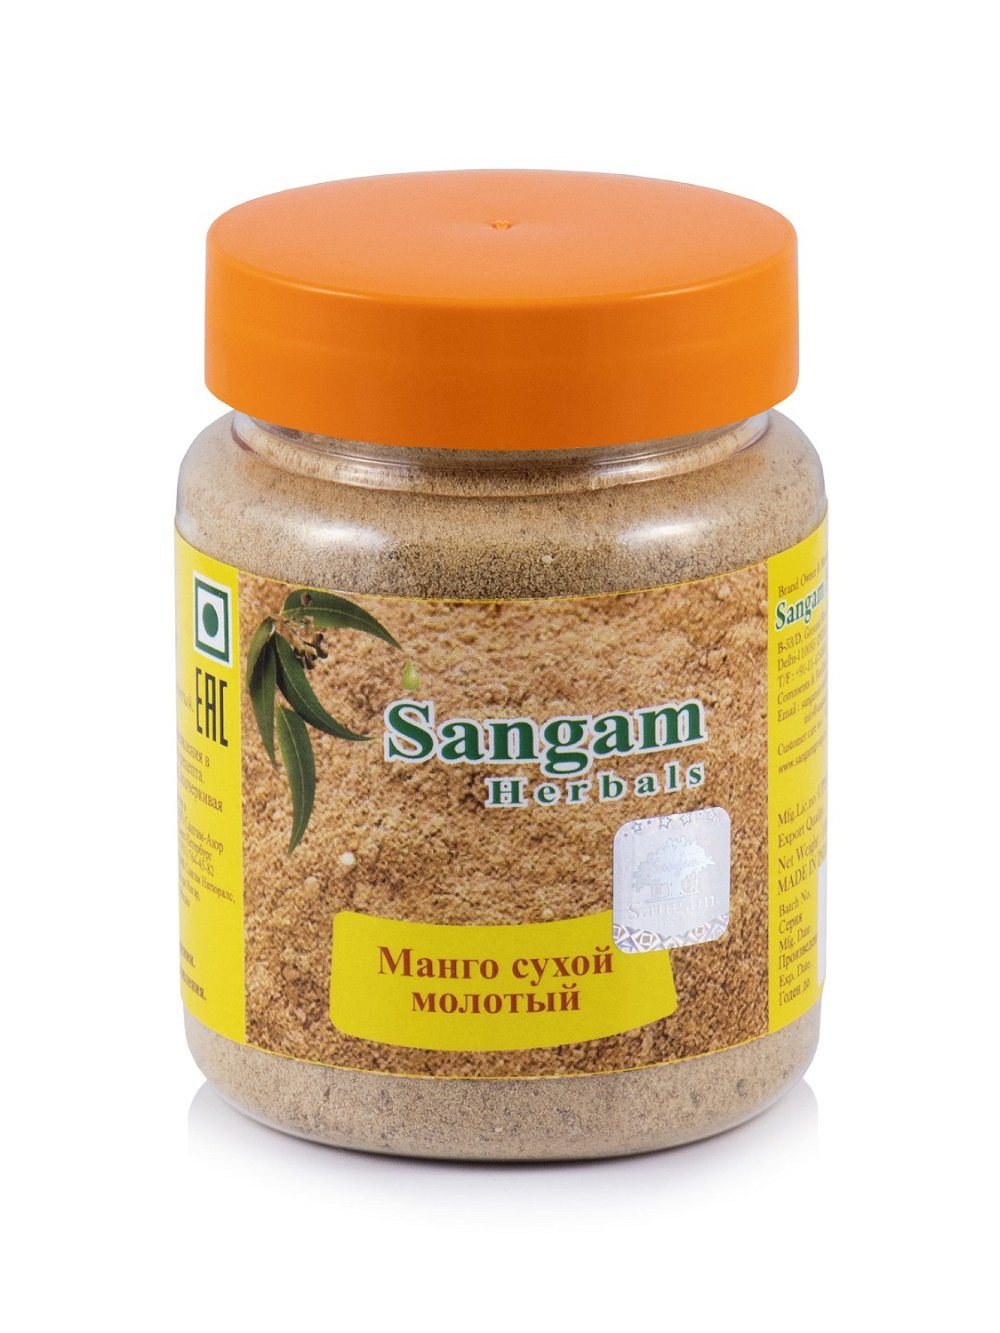 Манго сухой молотый Sangam Herbals (100 г), Манго сухой молотый